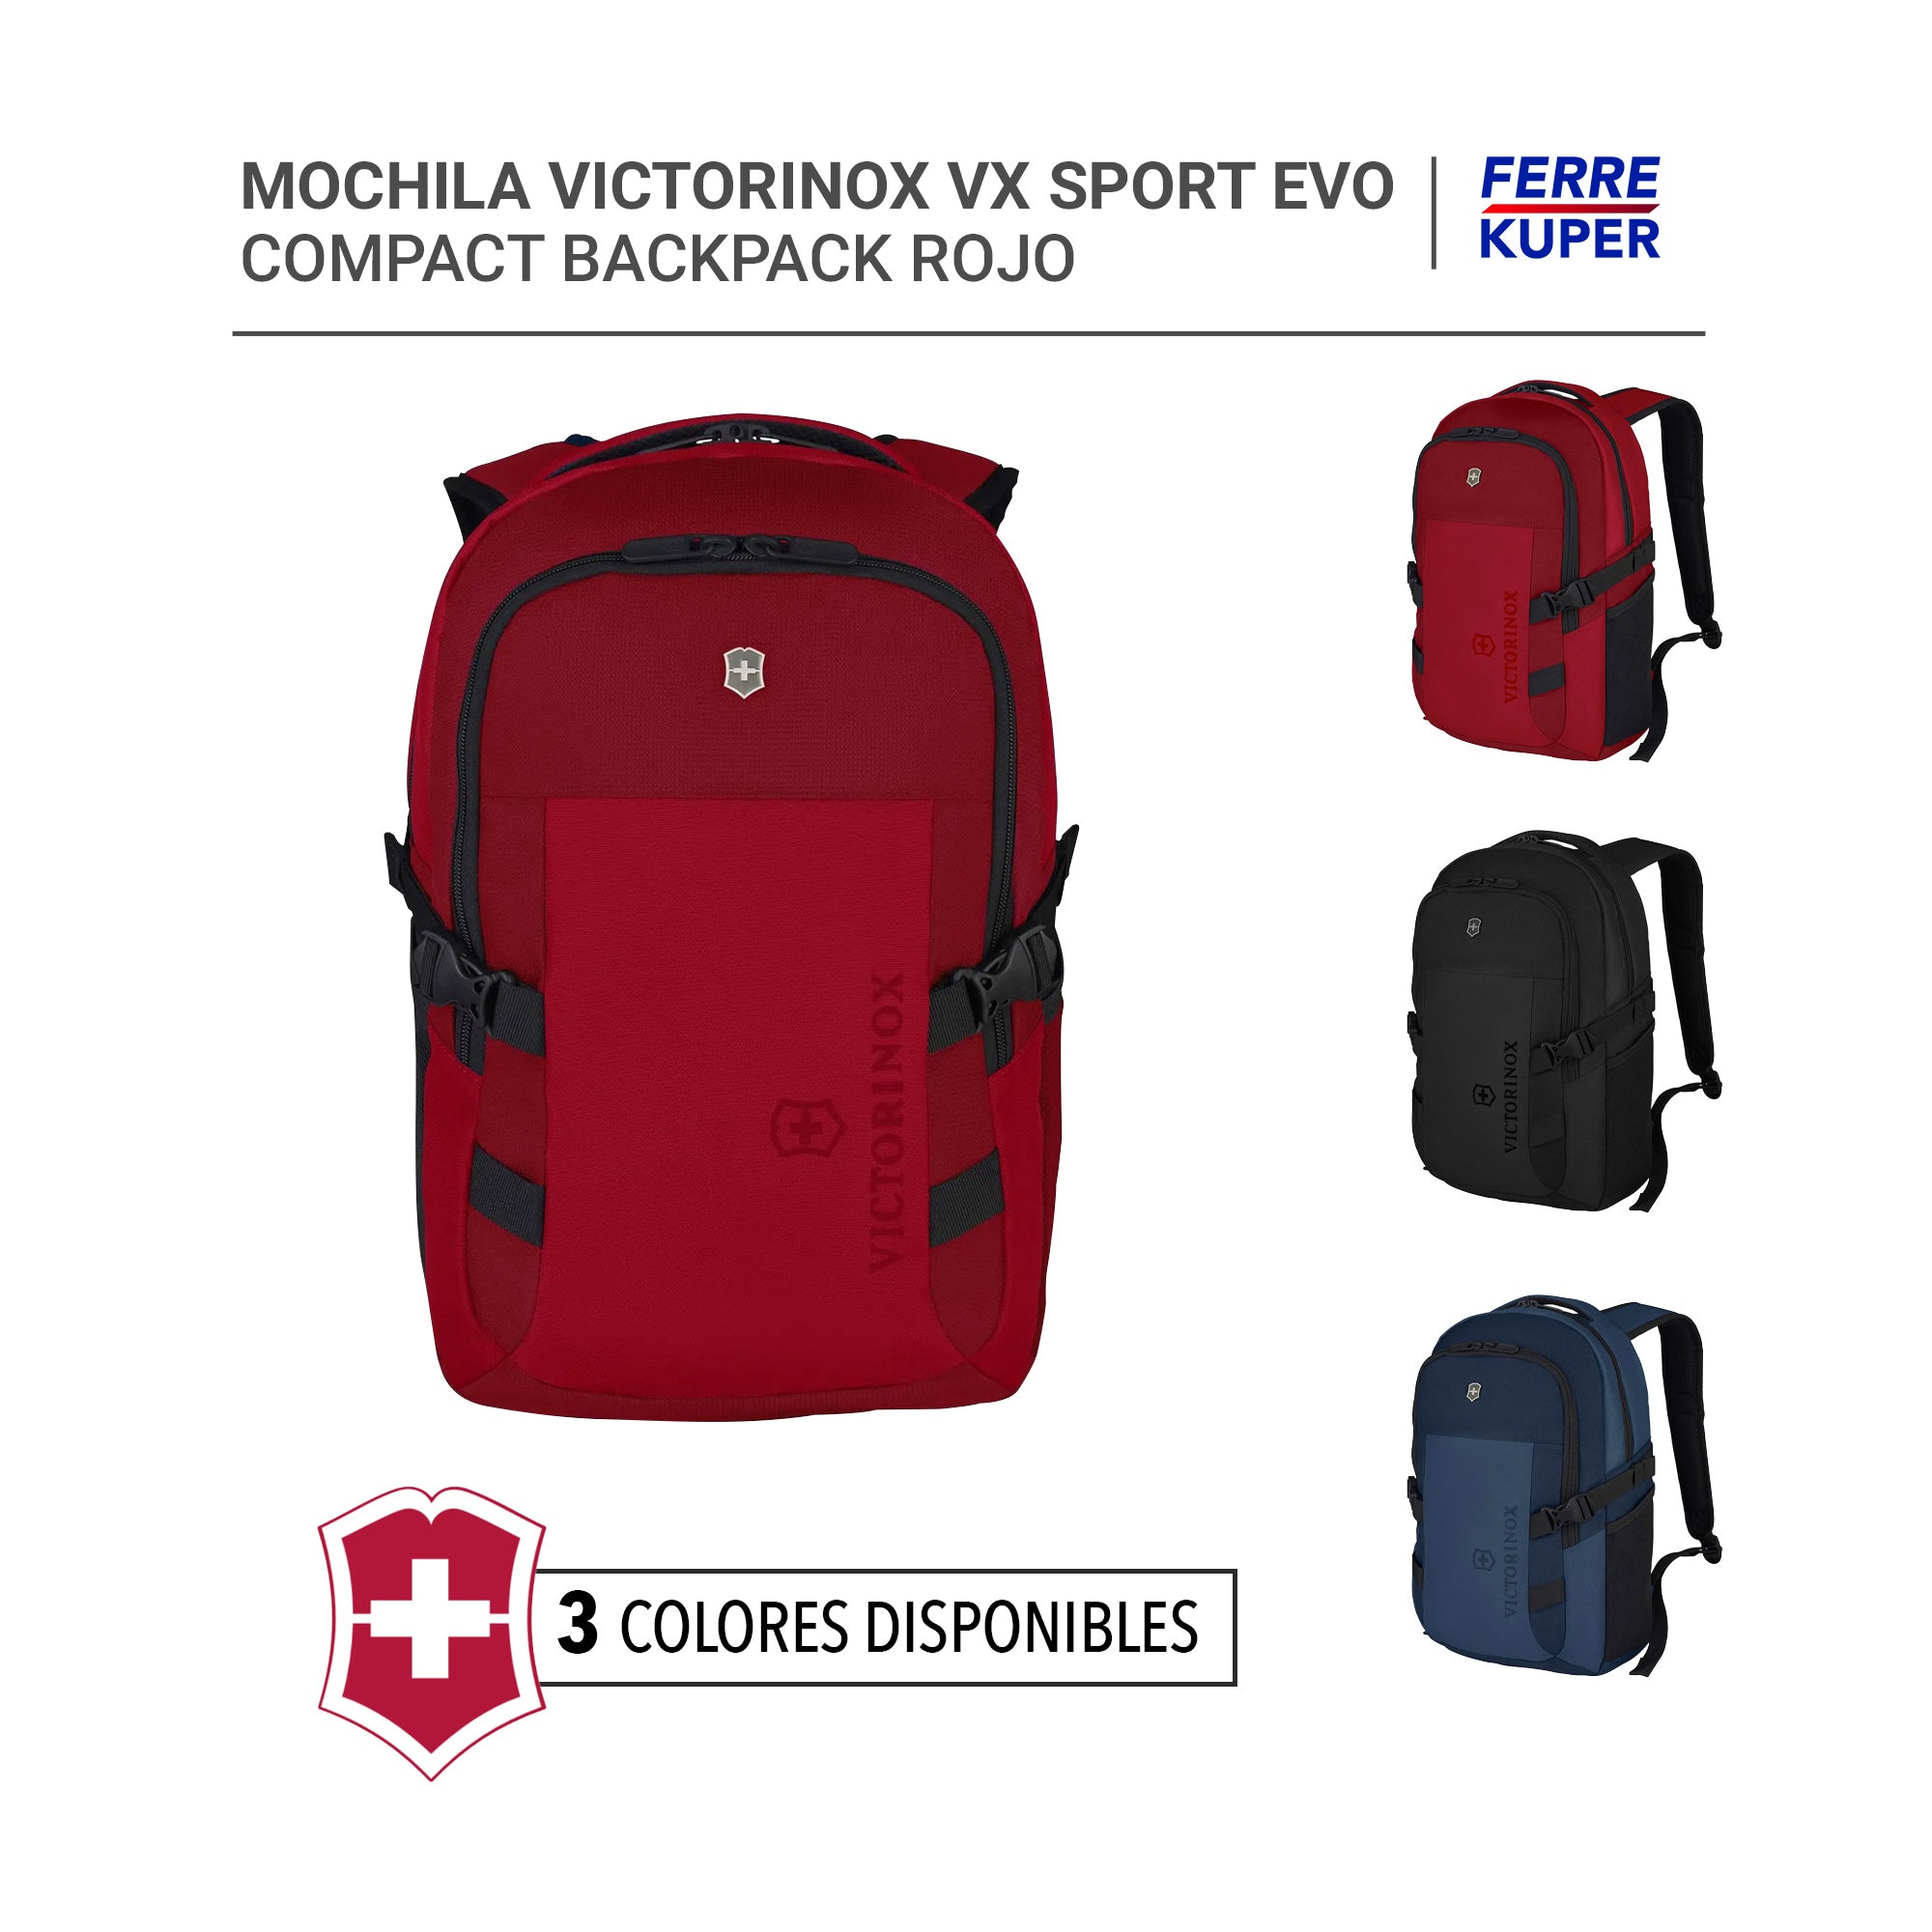 Lectura cuidadosa cartucho intermitente Mochila Victorinox VX Sport Evo Compact Backpack – FERREKUPER